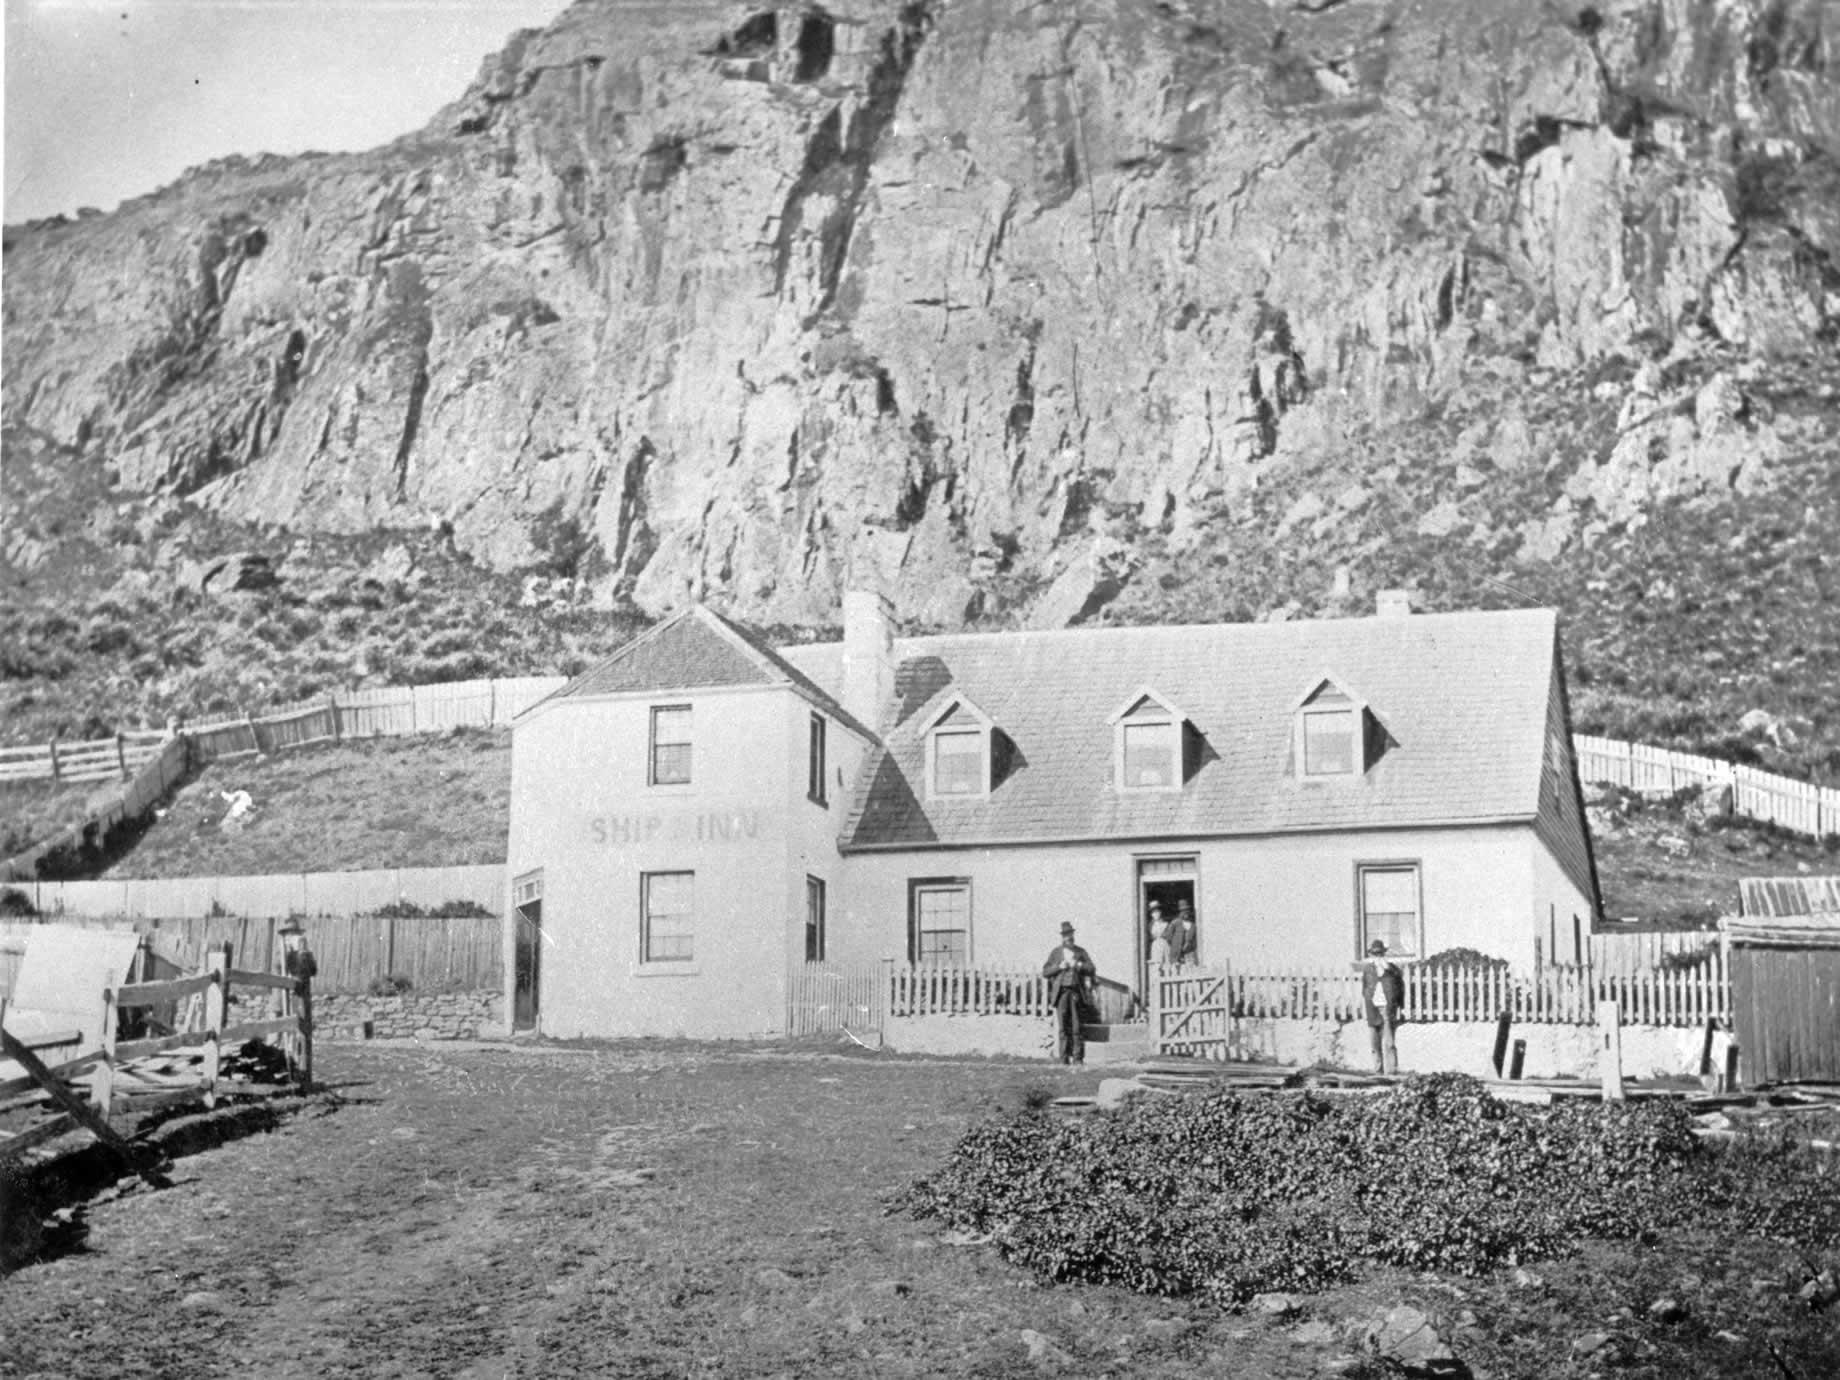 Le Ship Inn, dont la première licence date de 1849, vendu en 1903 et rebaptisé Bay View Hotel